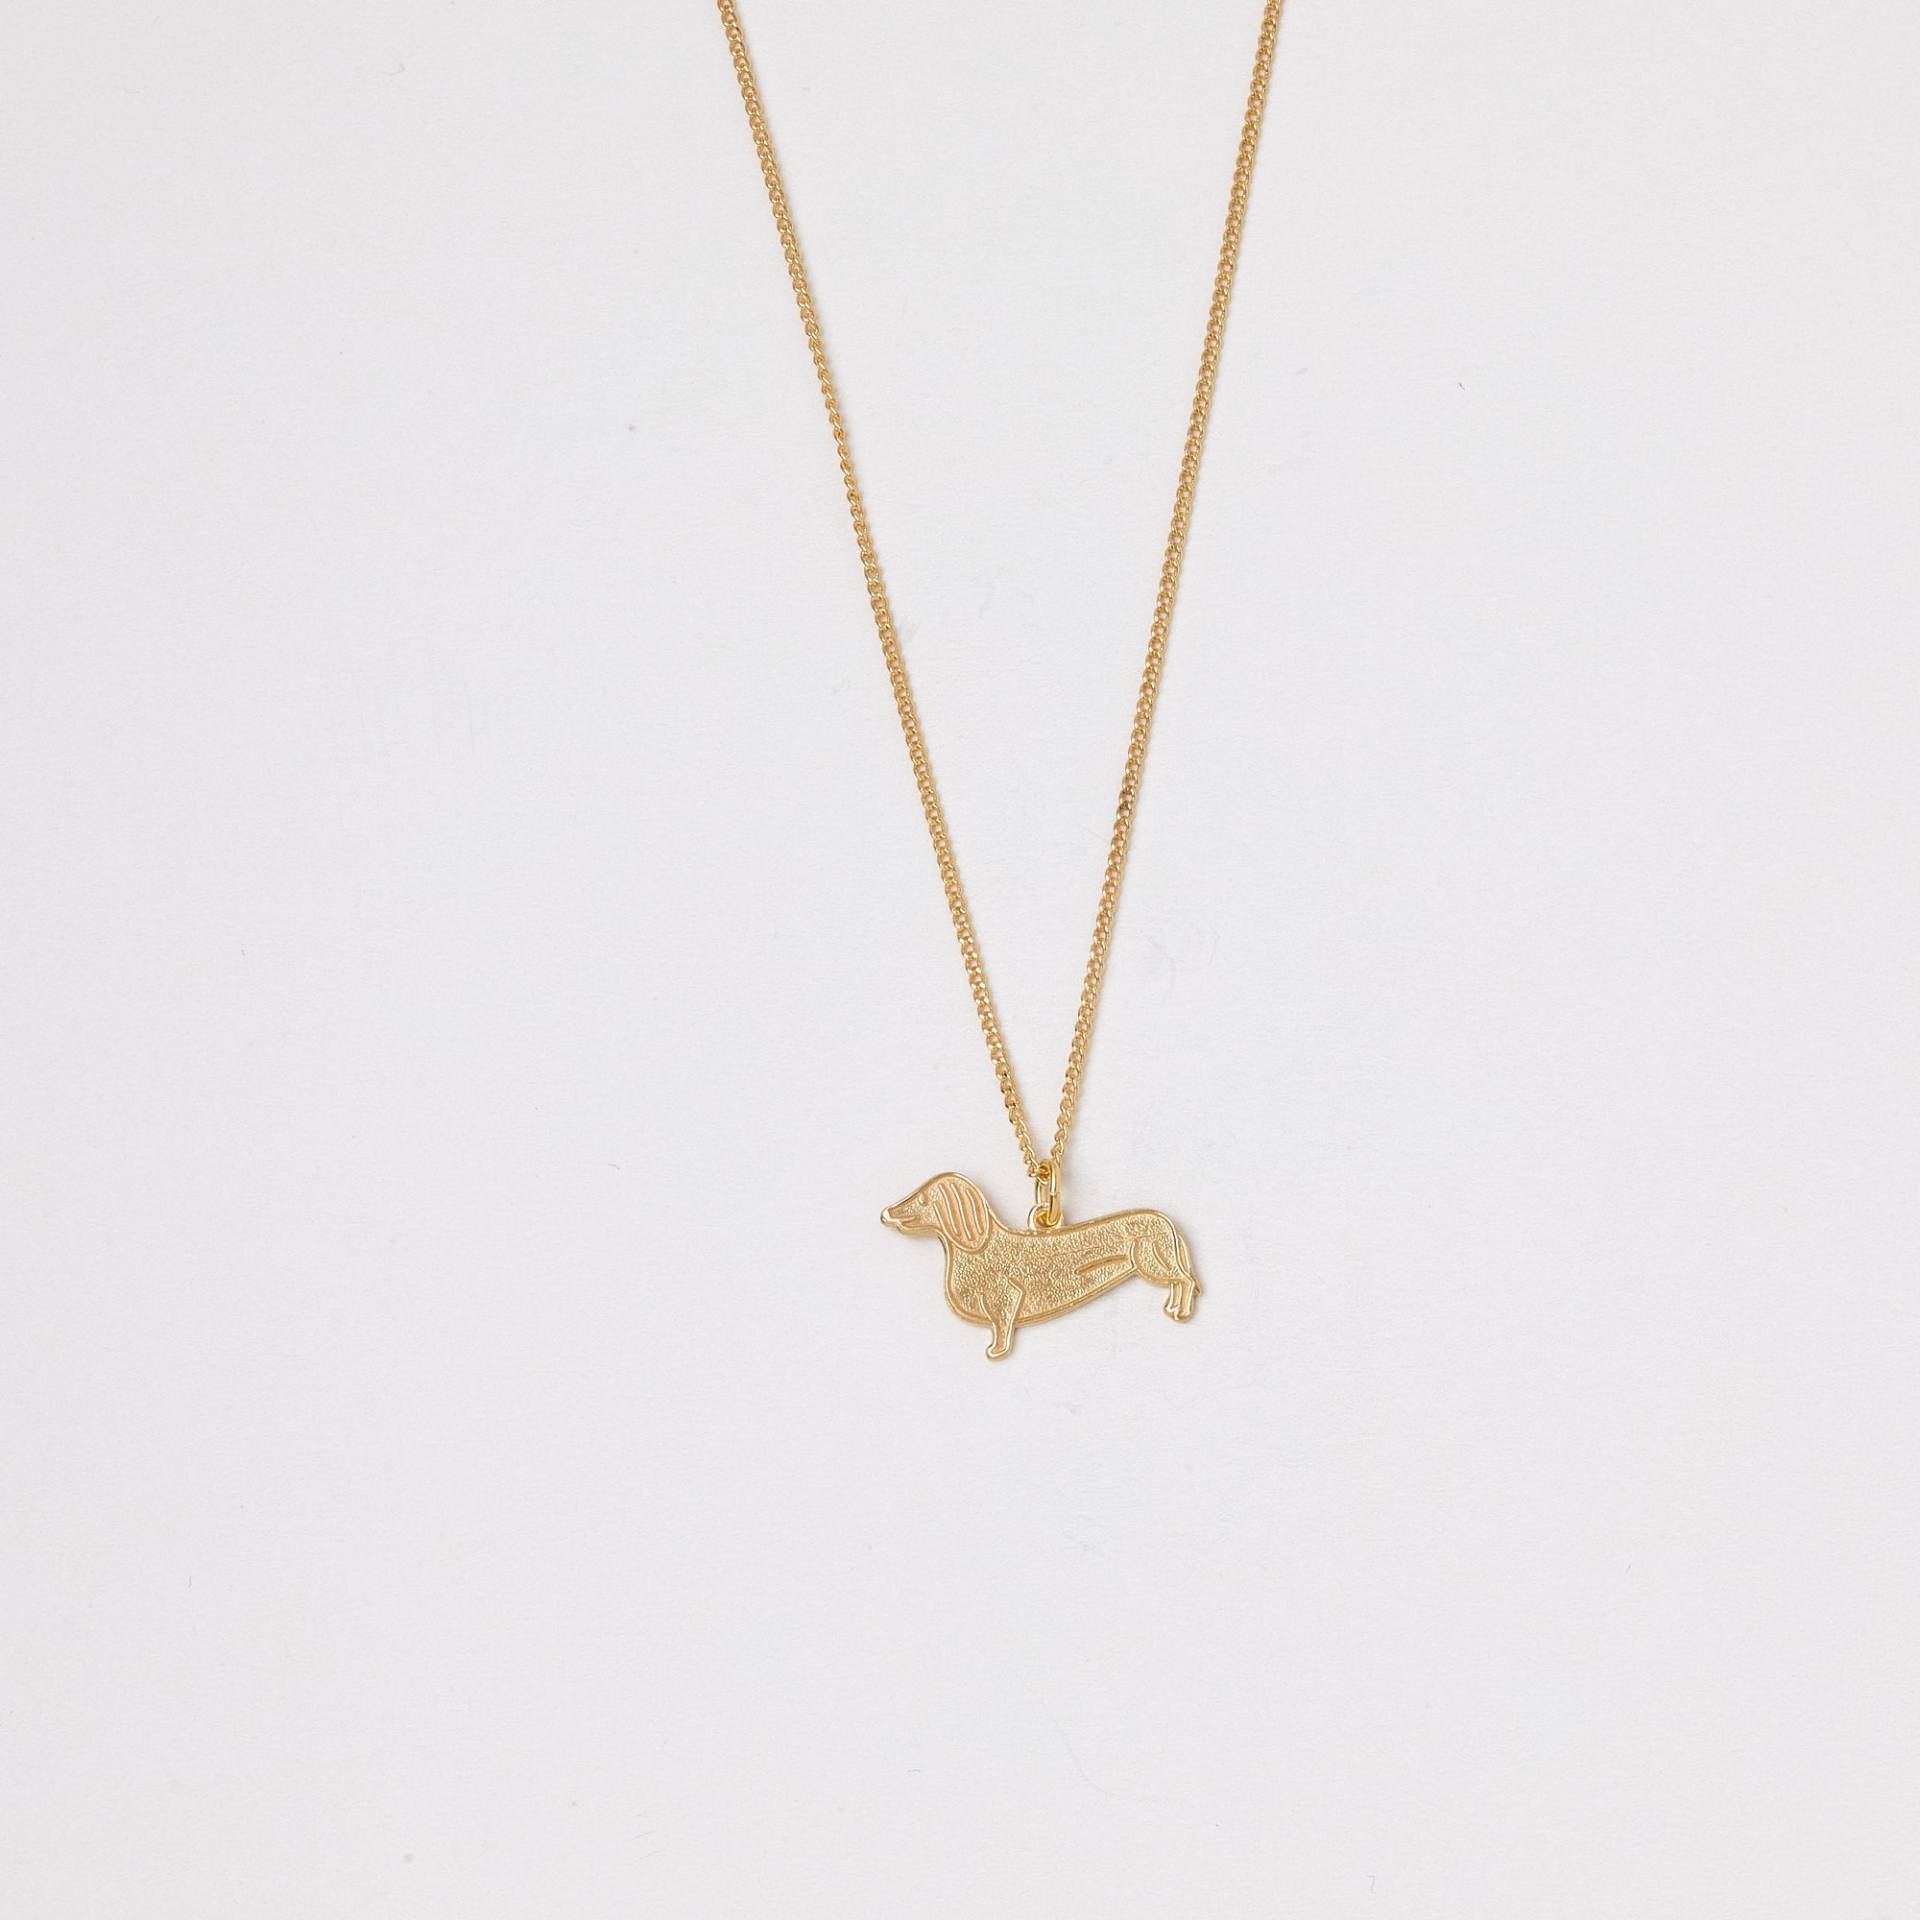 Goldene Kette Hund Dackel Dackellove Halskette Mit Einem Kleinen Dackelanhänger Anhänger Hundekette Teckel Brezel Dachshund von meineketten